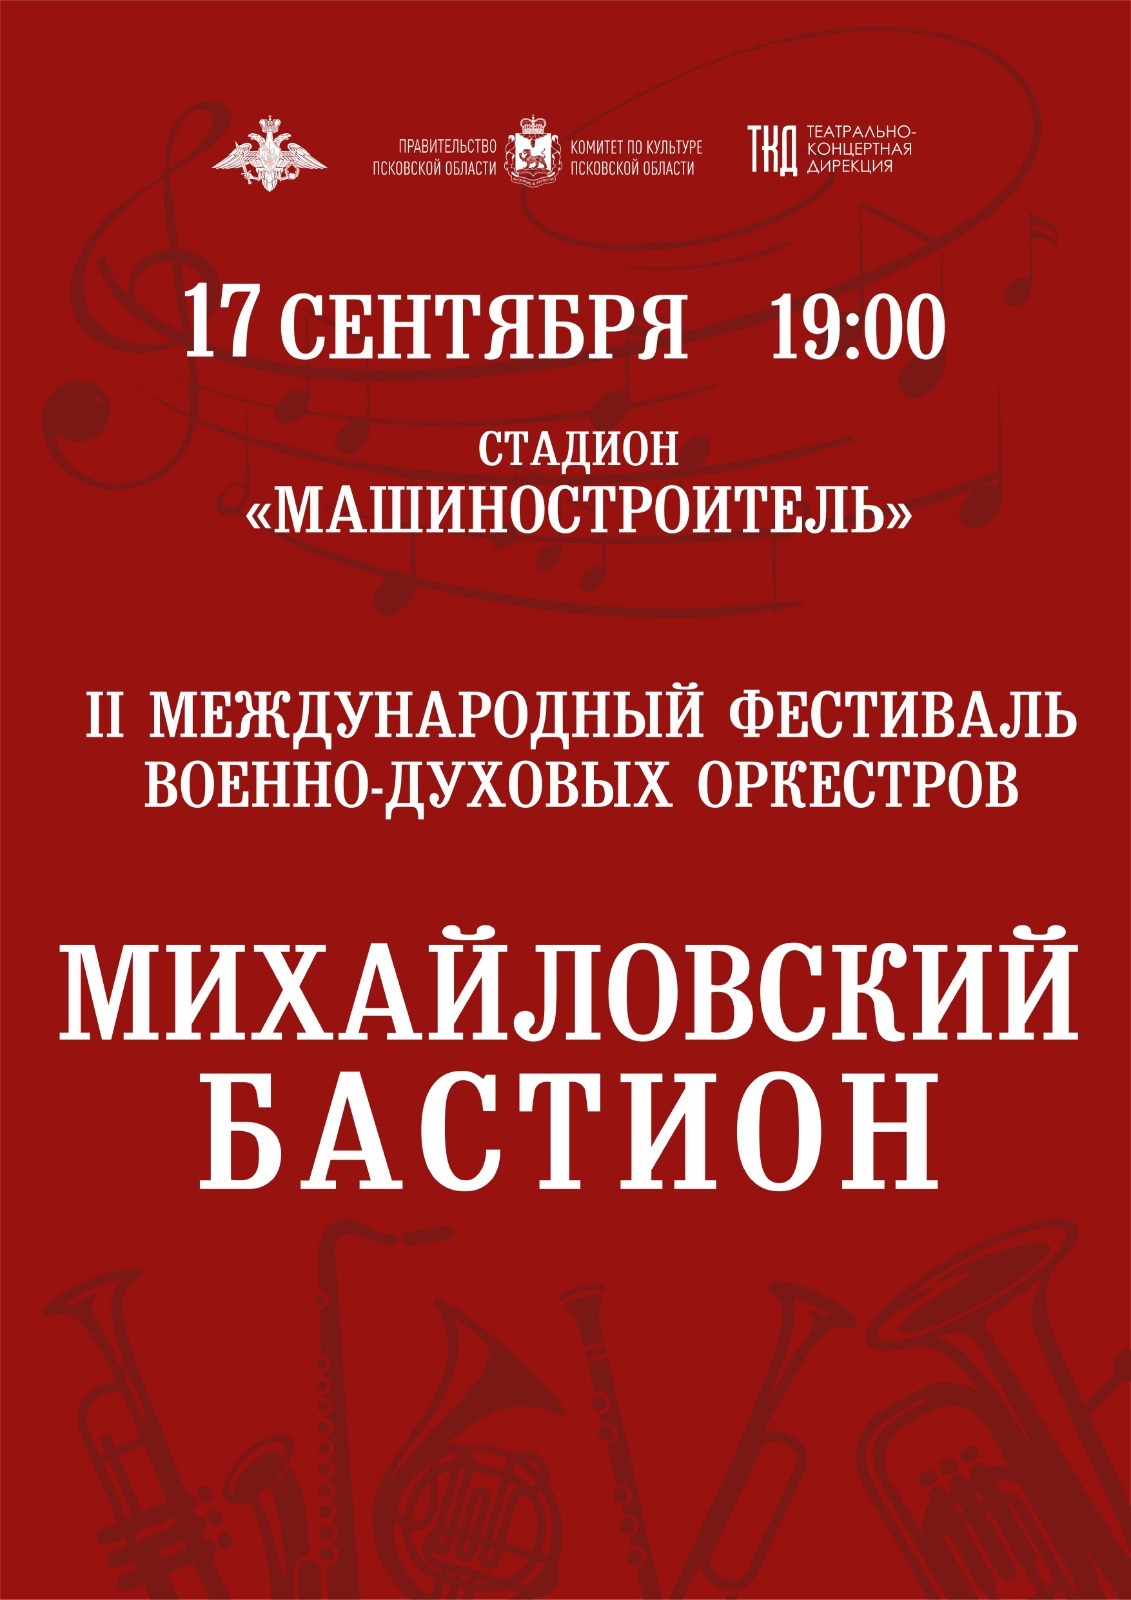 Фестиваль военных духовых оркестров «Михайловский бастион»